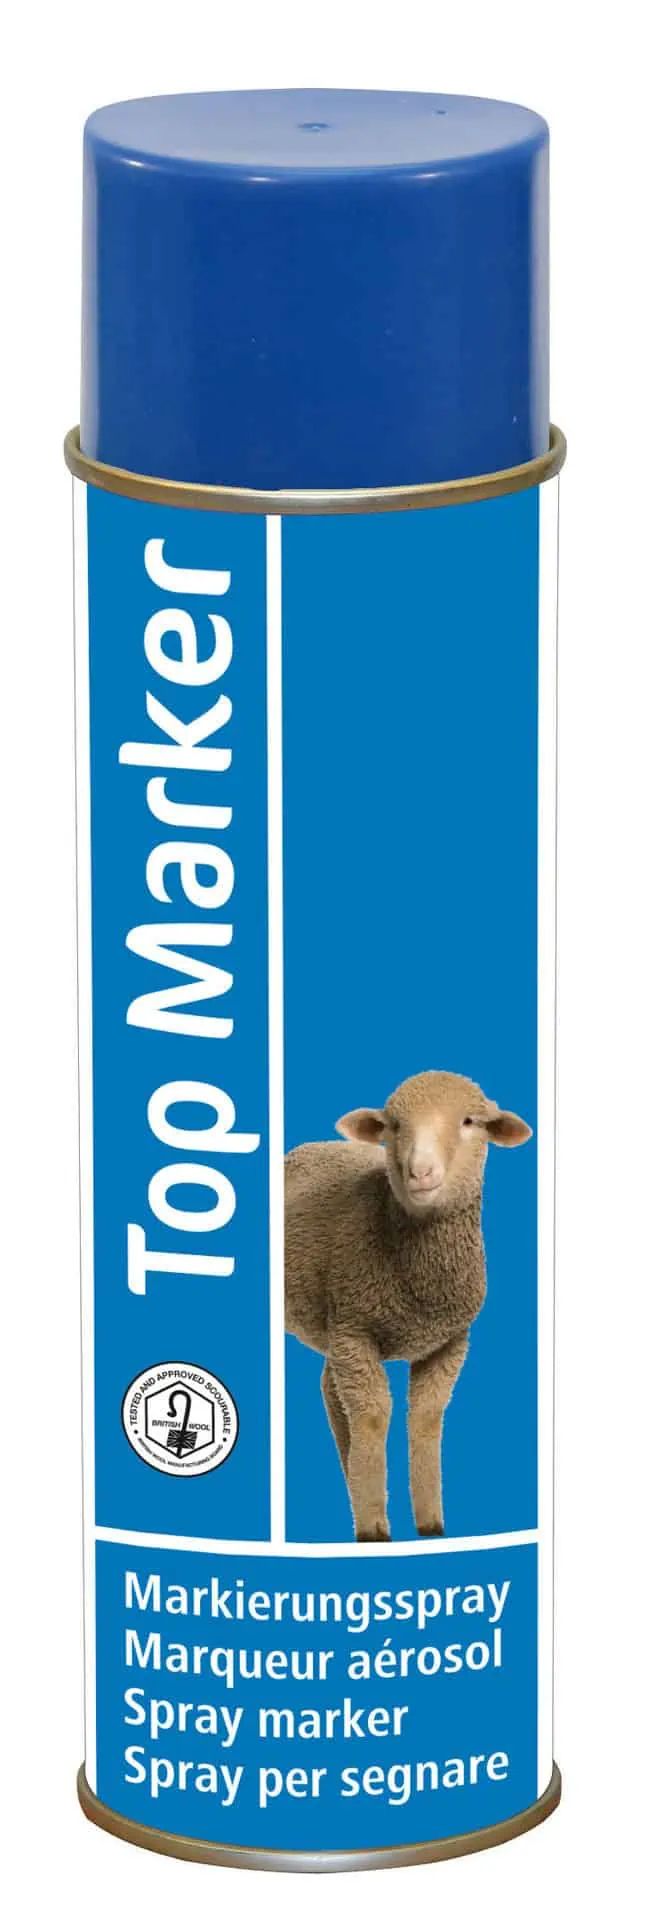 Schafmarkierungsspray blau, TopMarker, 500ml